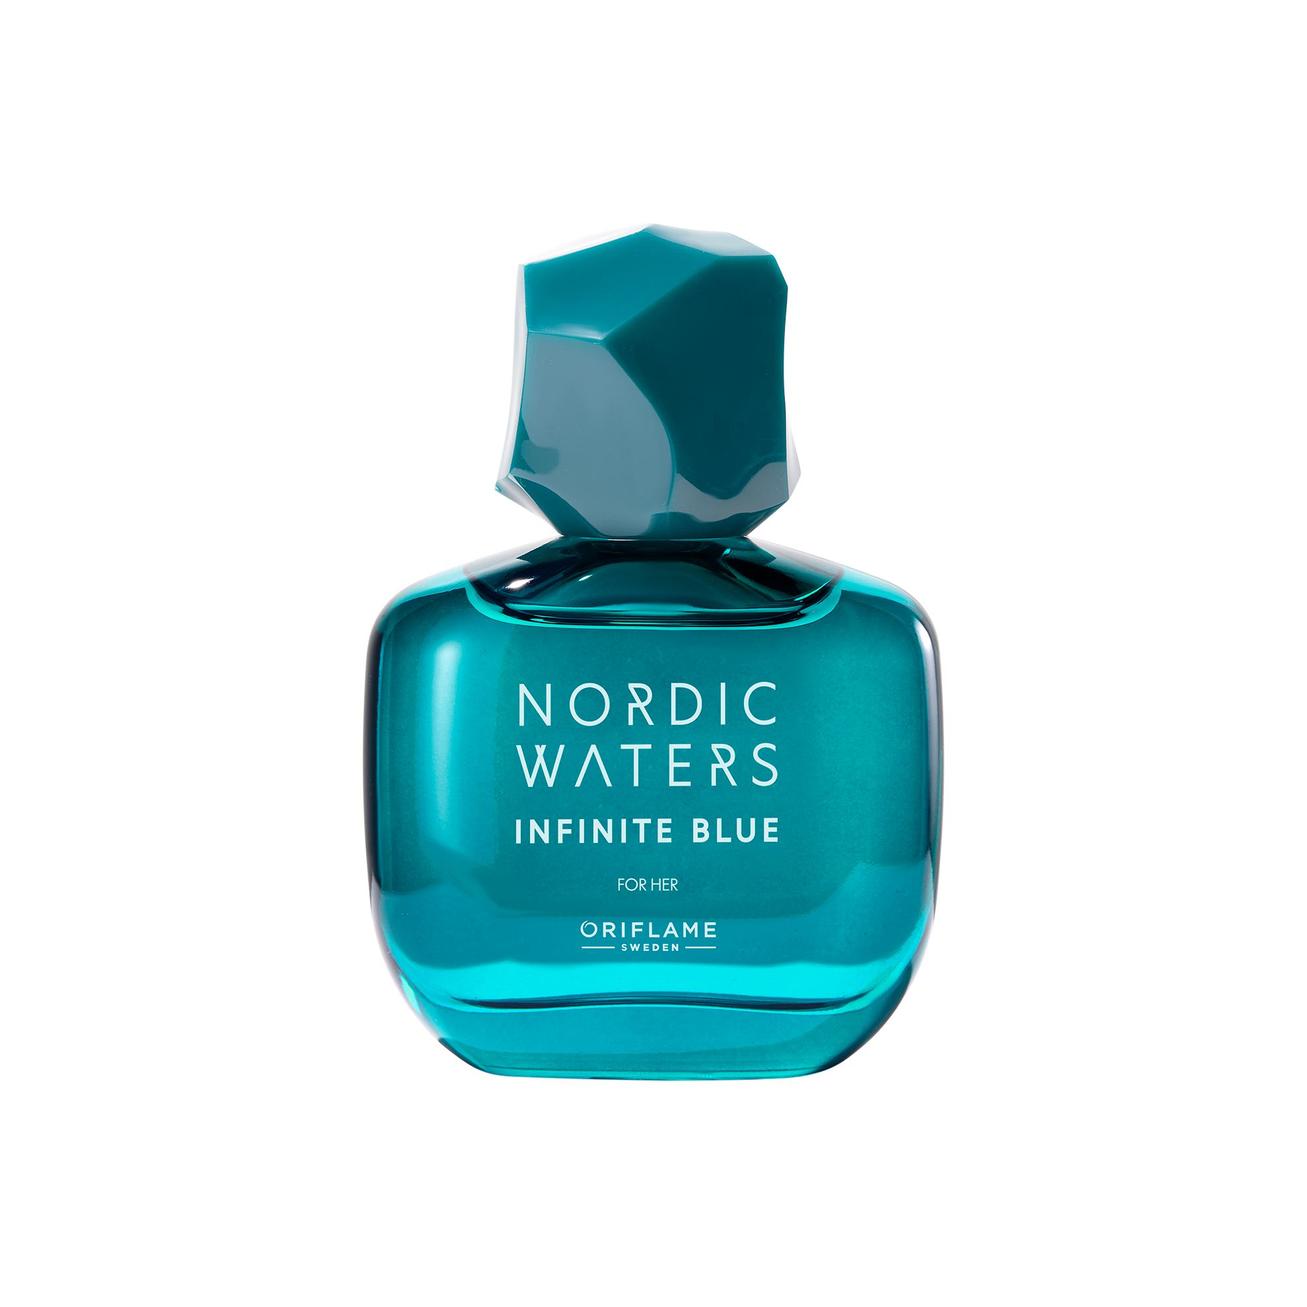 Προσφορά Γυναικείο Άρωμα Nordic Waters Infinite Blue EdP για 21,99€ σε ORIFLAME